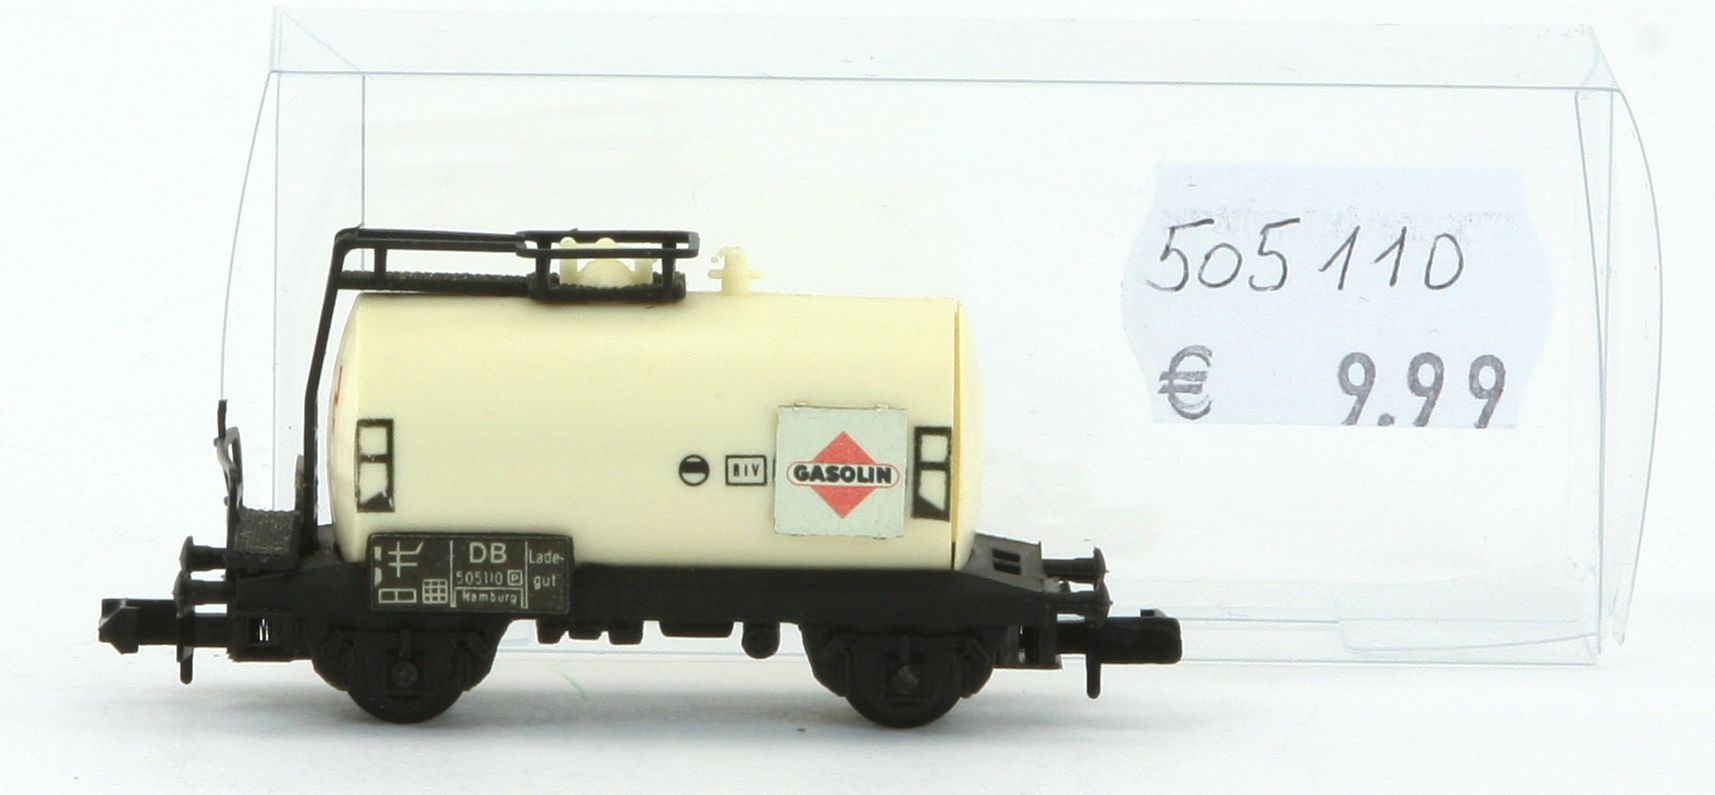 Arnold 505110-G - Kesselwagen, DB, Gasolin, Beige